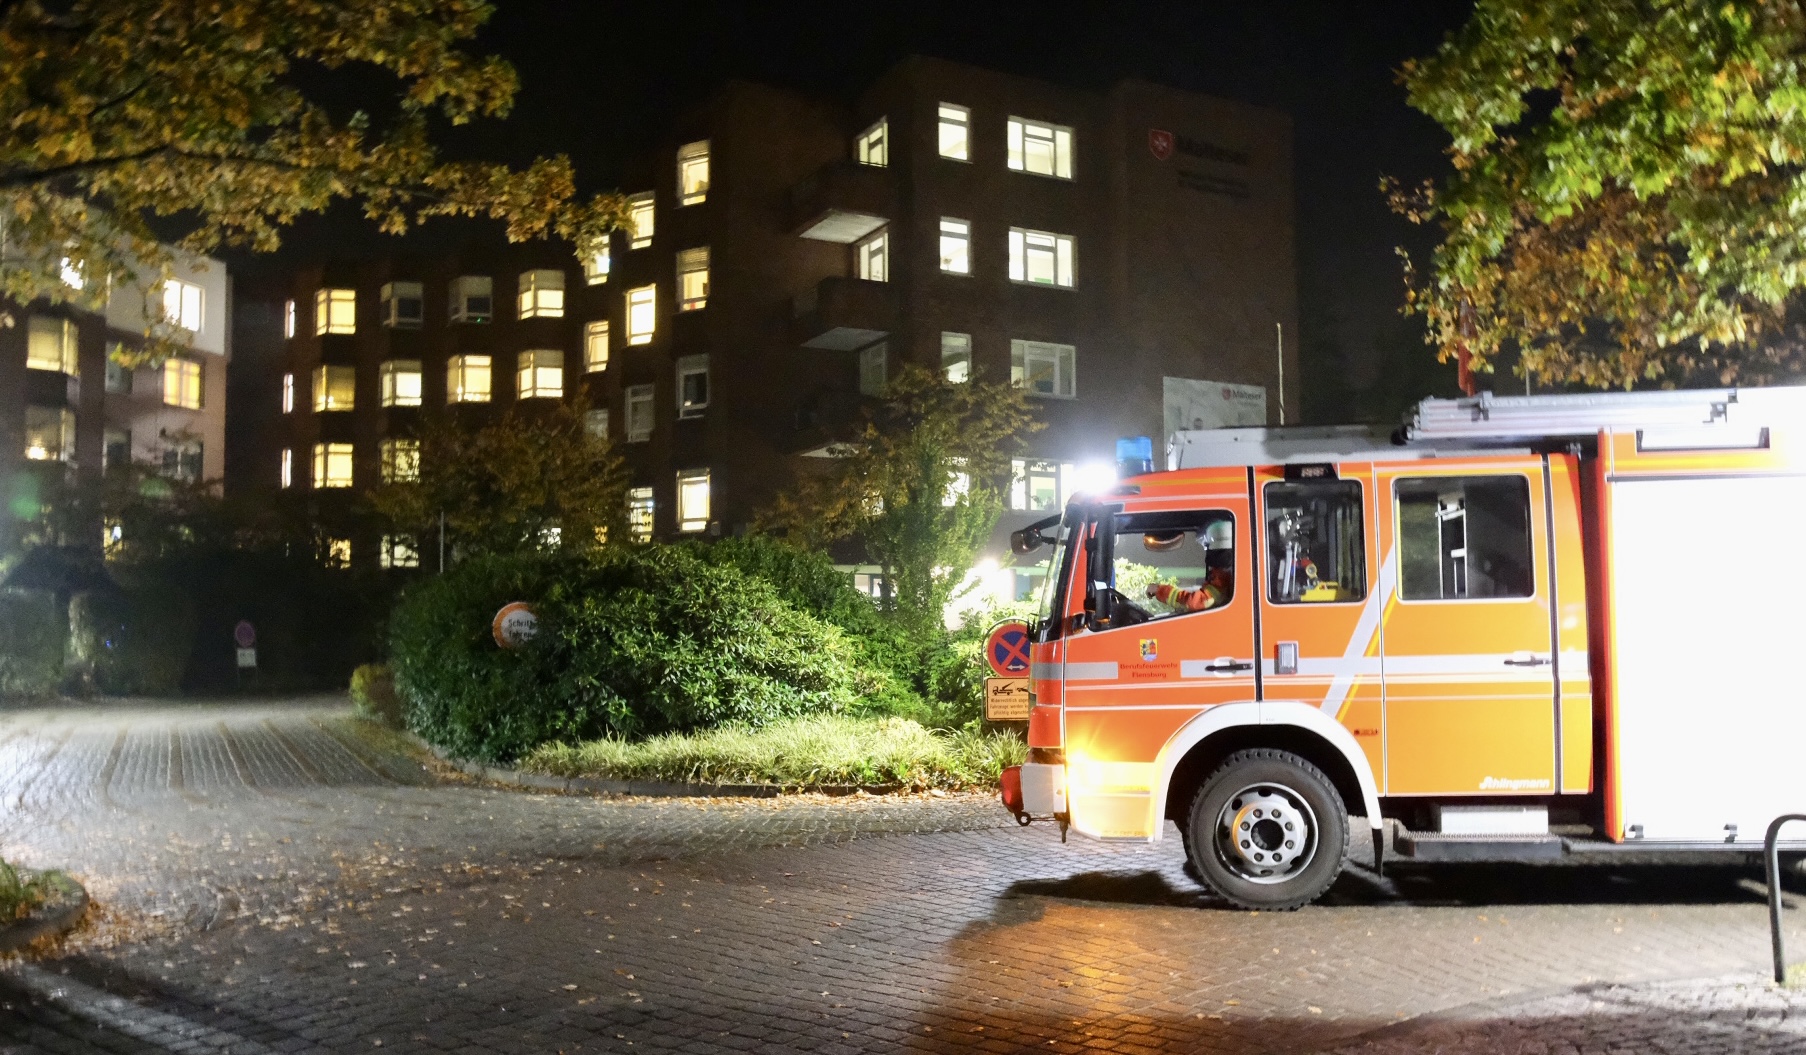 Brandgeruch sorgt für Feuerwehreinsatz im Franziskus Hospital foerde news